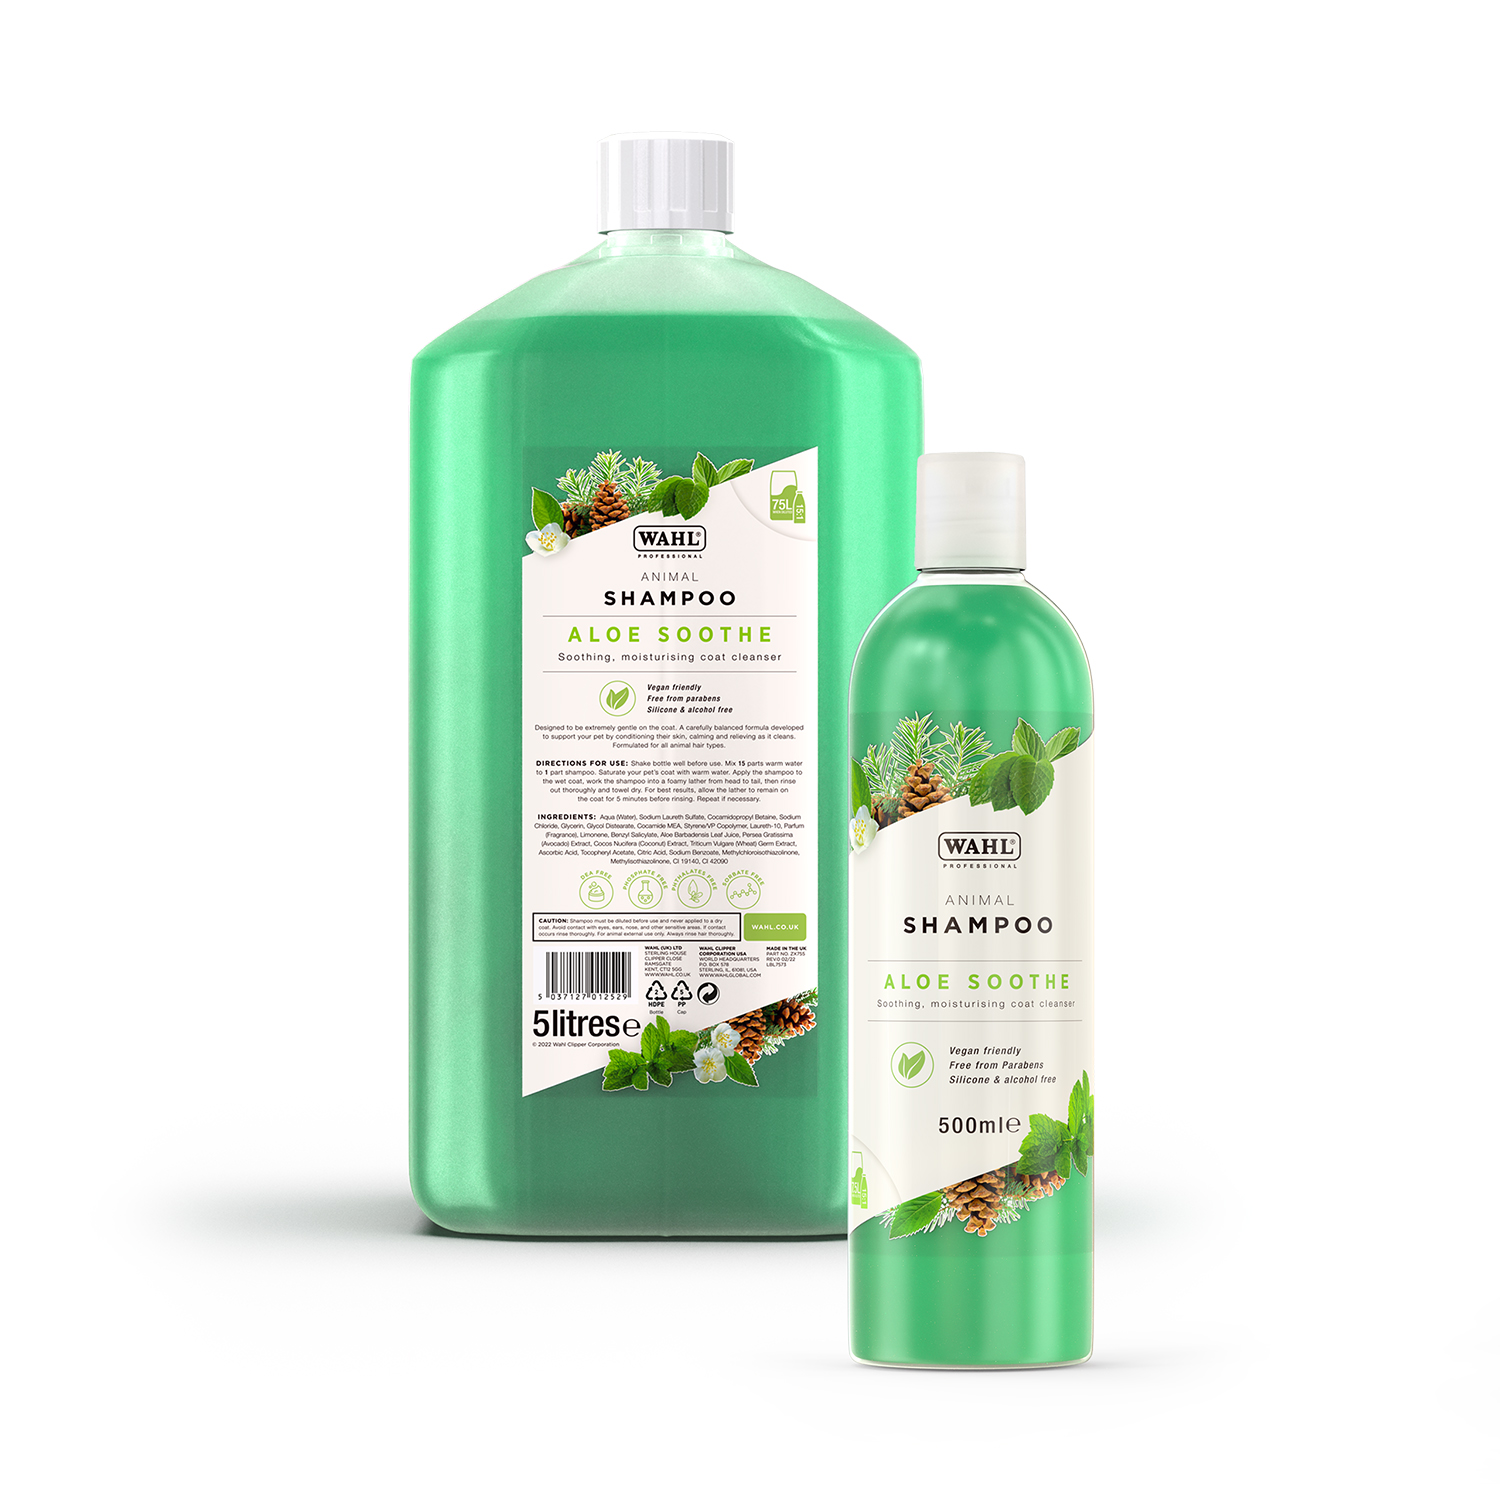 Aloe soothe shampoo bottle